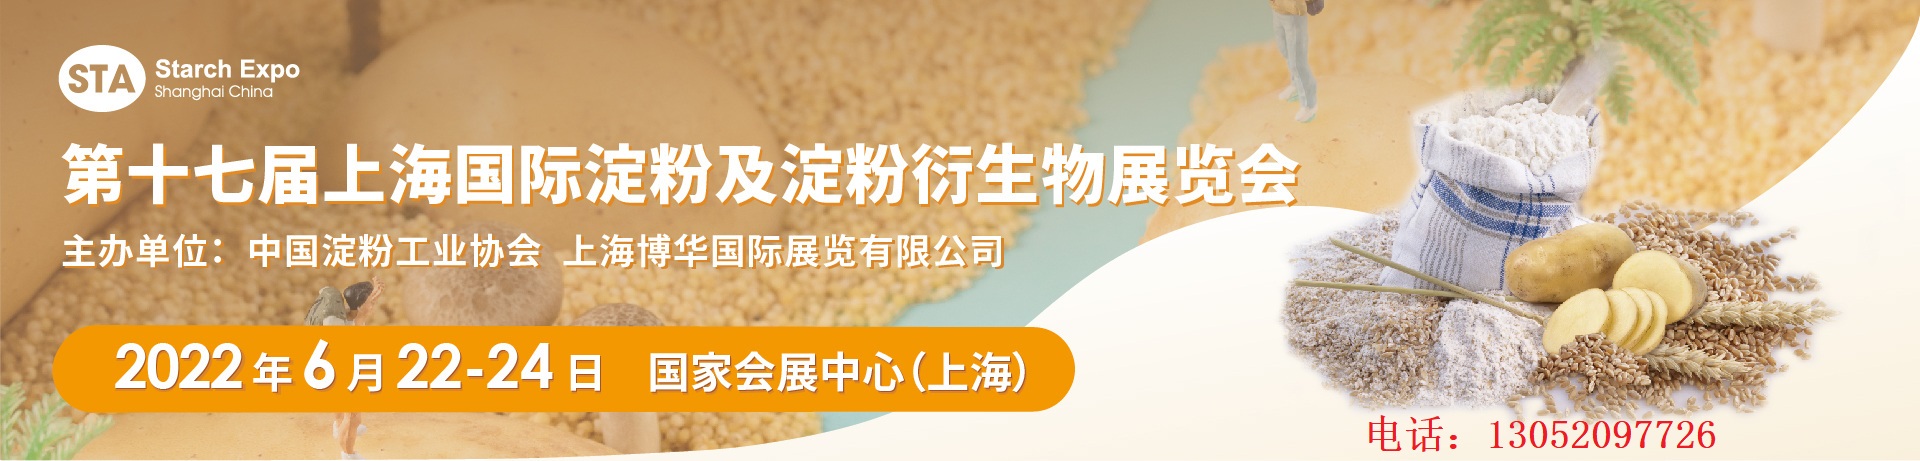 2022年上海第十七届淀粉博览会 2020中国国际农业机械展览会 上海2022年淀粉博览会